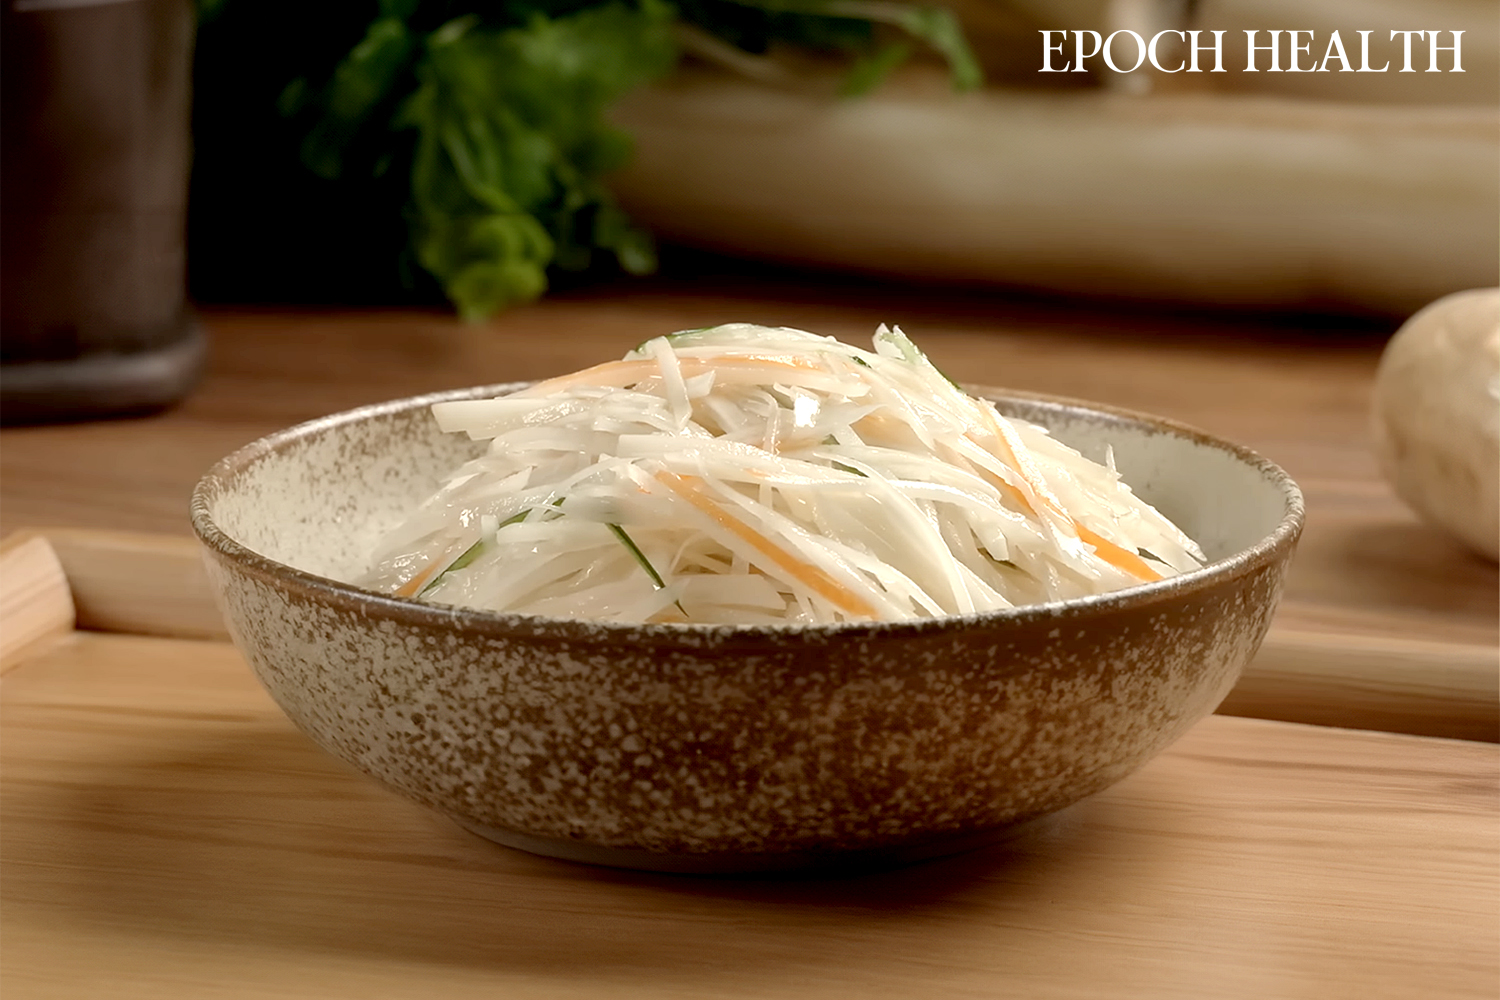 Salad khoai tây lạnh là món ăn có thể chế biến trong vòng 5 phút mà không cần nấu. (Ảnh: The Epoch Times)